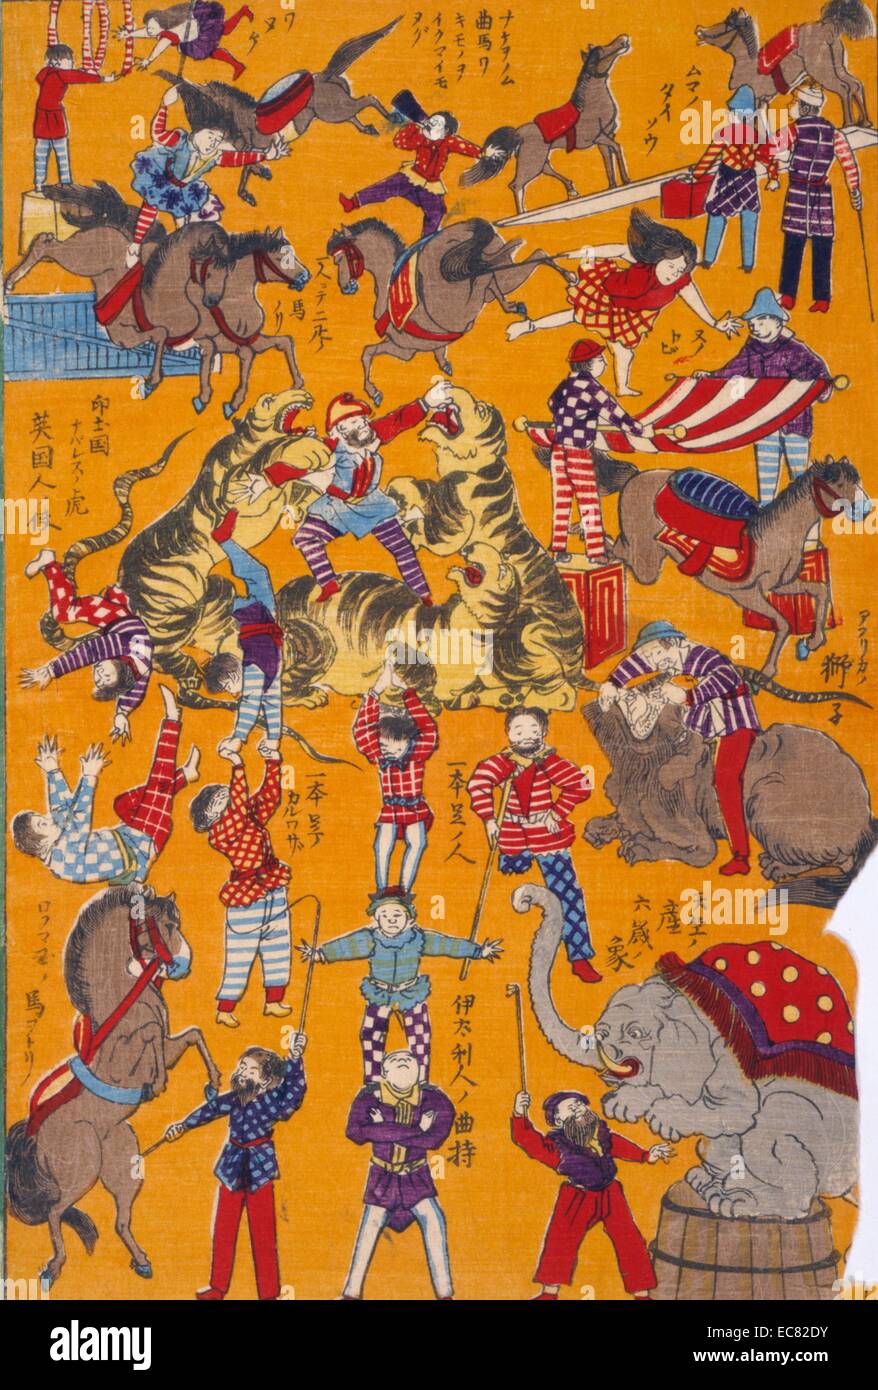 Giapponese colorate a mano la xilografia. L'immagine mostra una grande circus, in cui un numero di persone che compiono atti di intrattenimento. Questi includono trucco equitazione, addomesticare animali e acrobazie. Creato nel 1871. Foto Stock